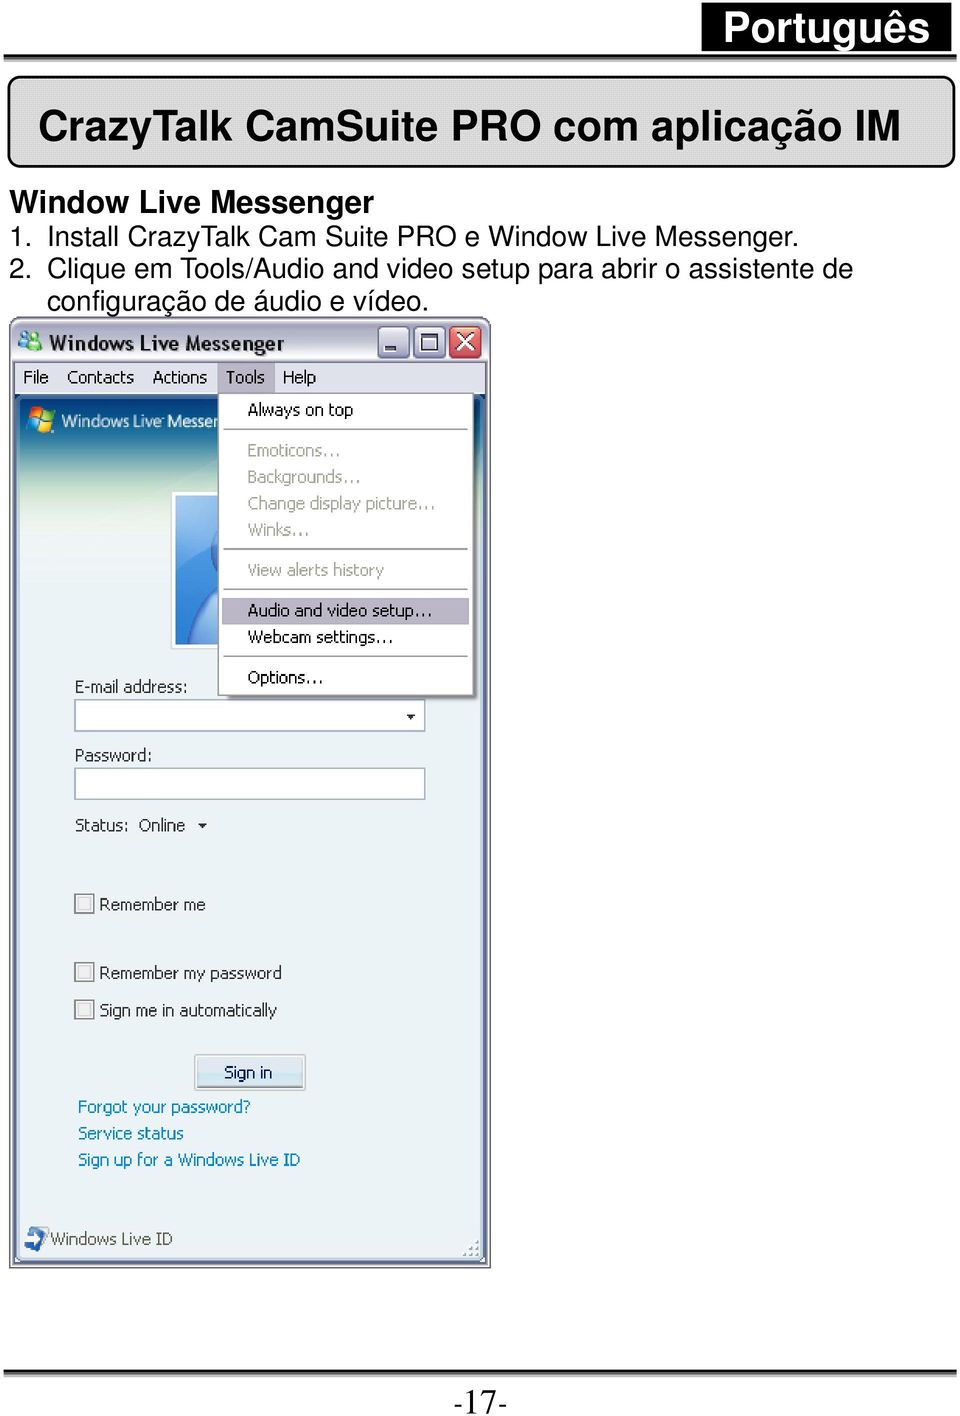 Install CrazyTalk Cam Suite PRO e Window Live Messenger.